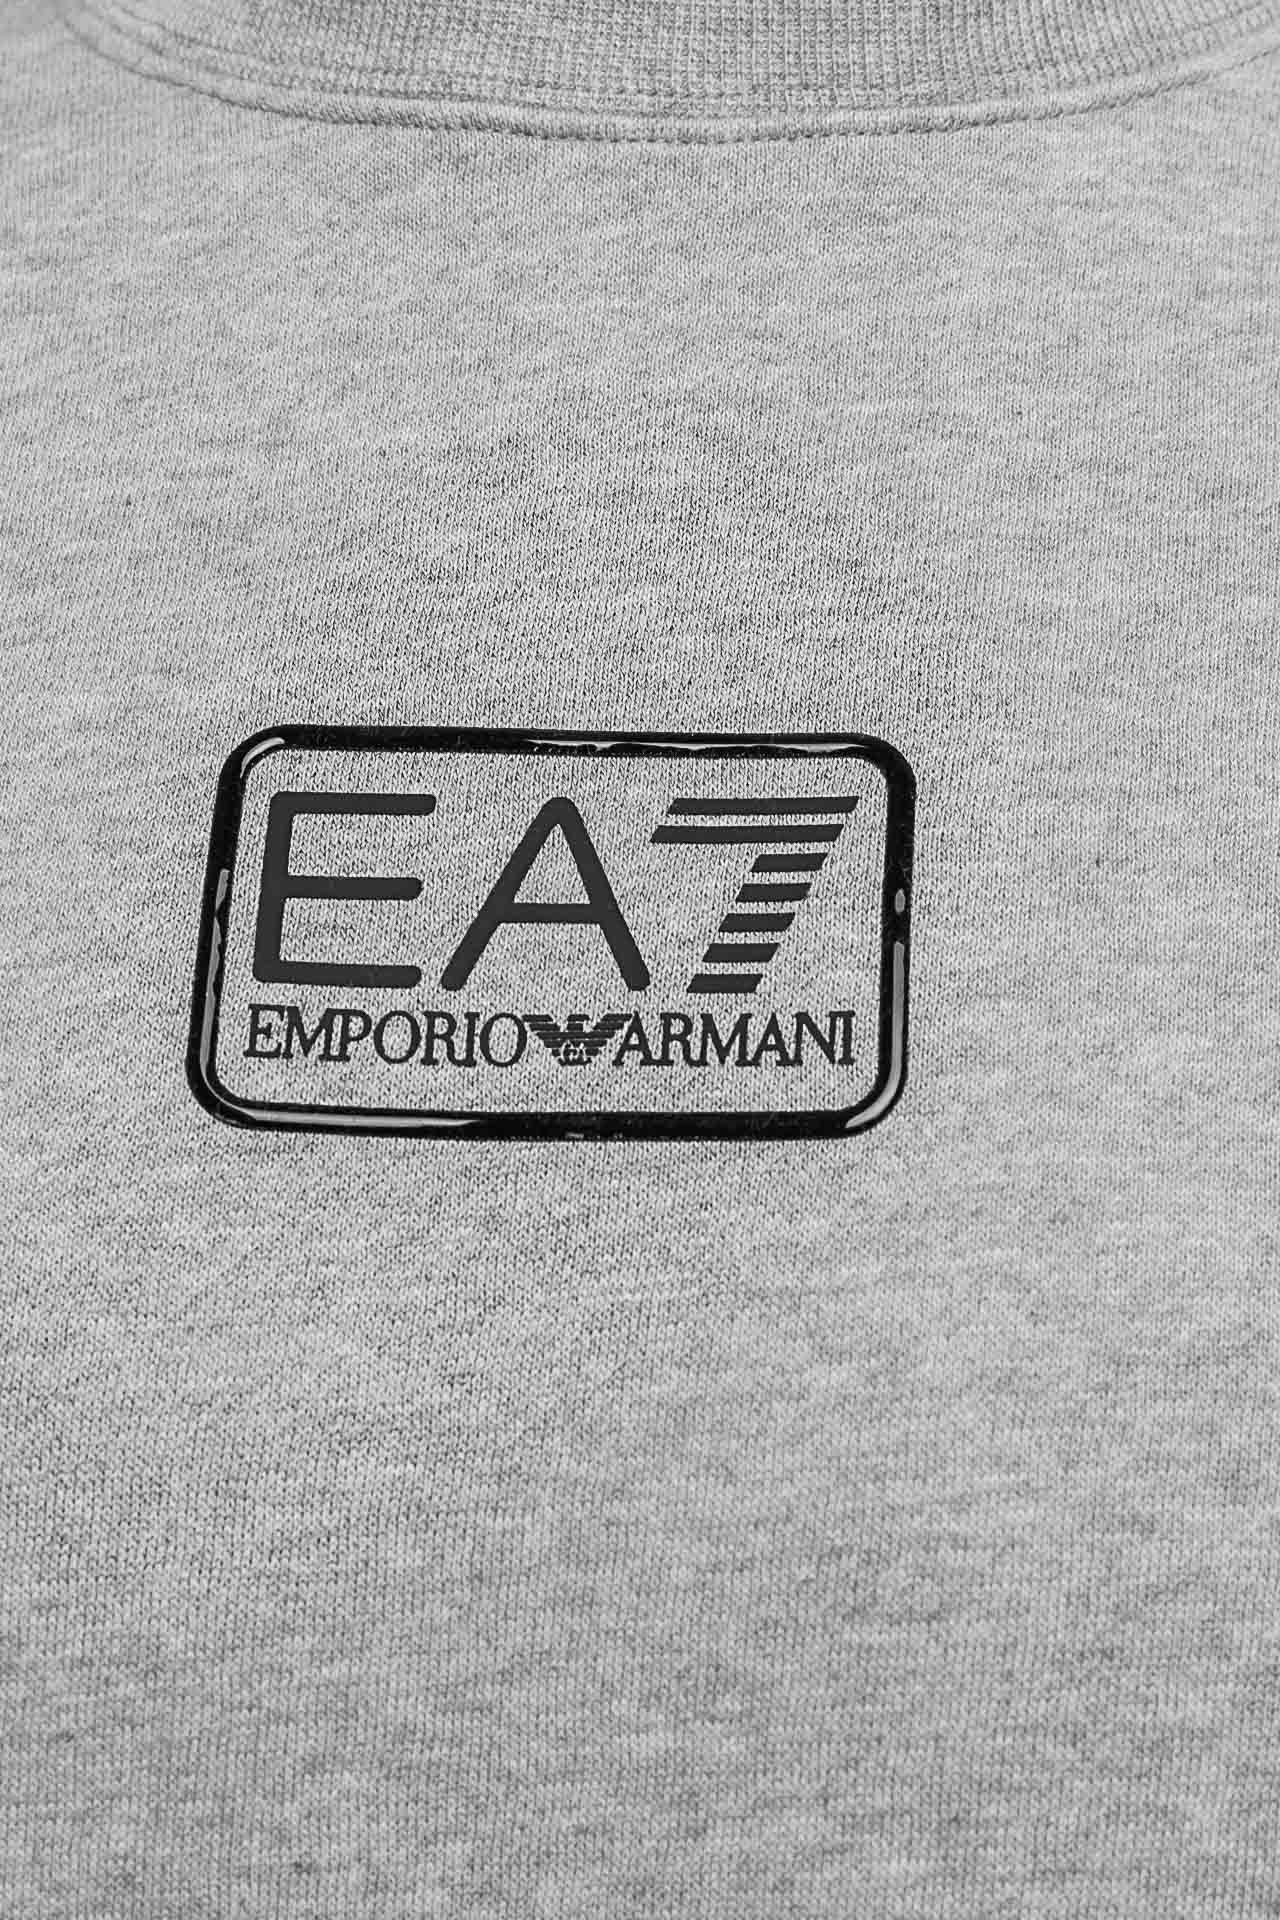 Bluza męska EA7 Emporio Armani 6LPM92-PJ07Z-3905